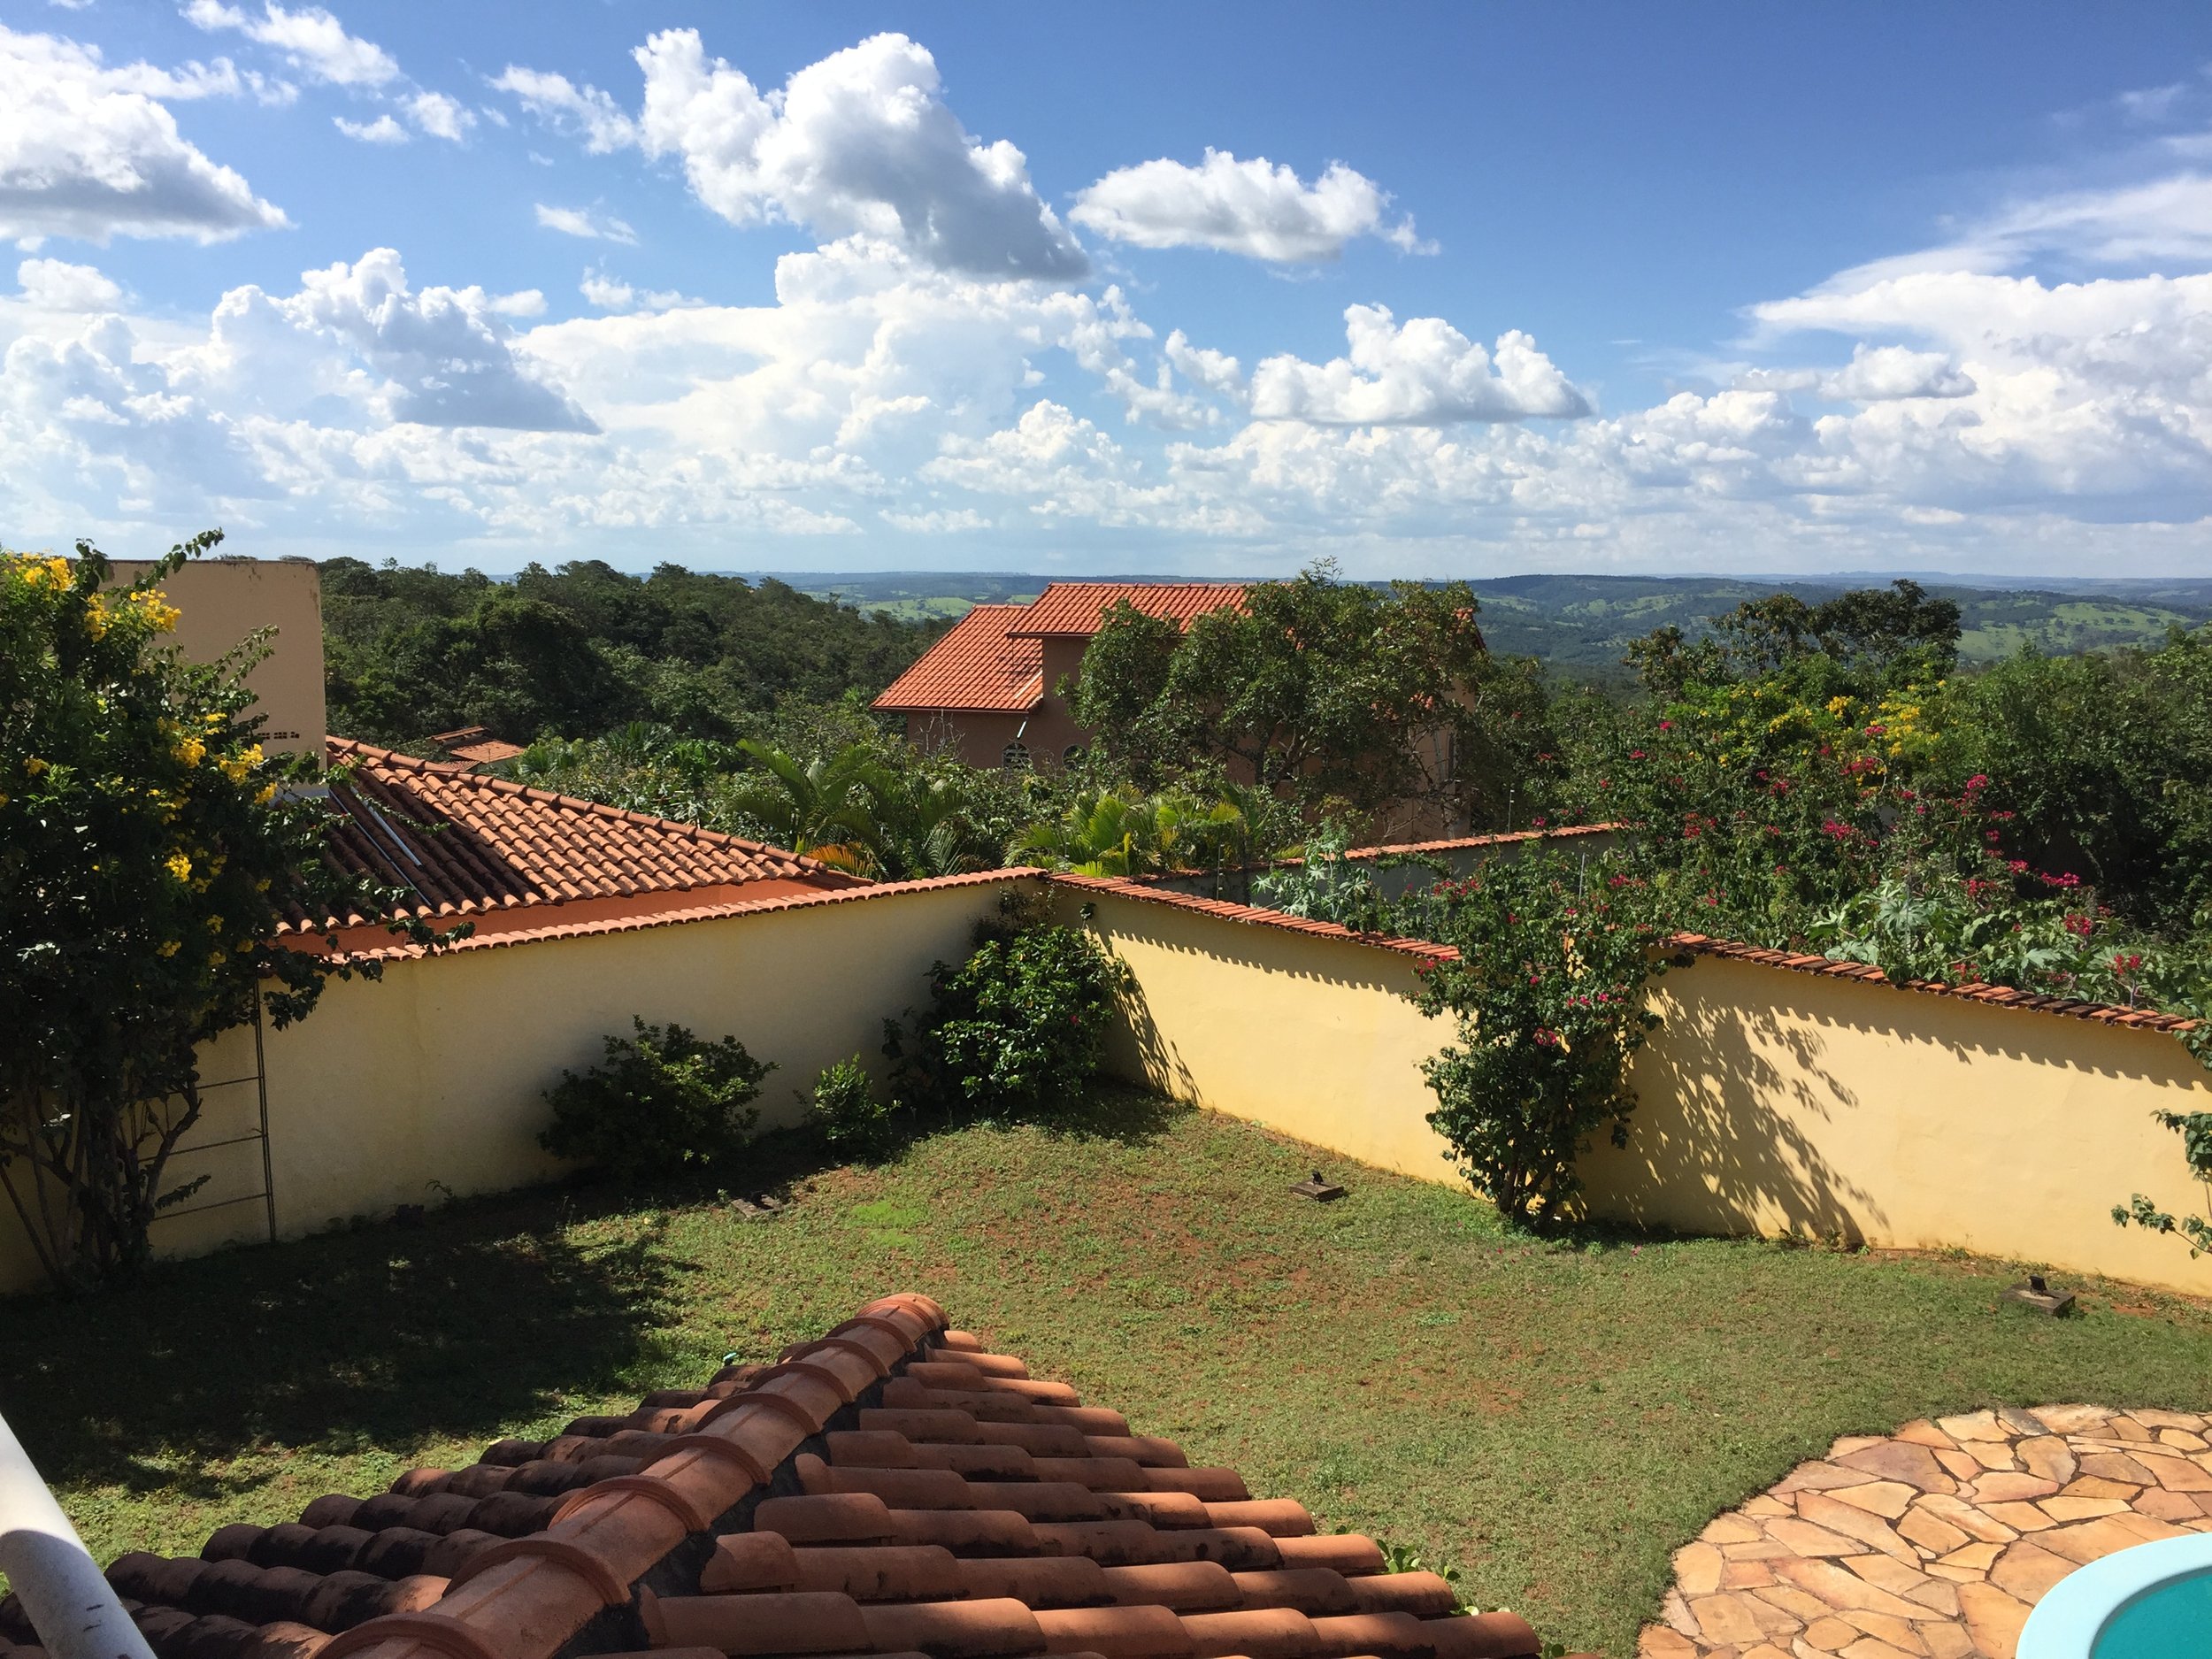 From the upper terrace of Casa de Luz in Abadiania, Brazil